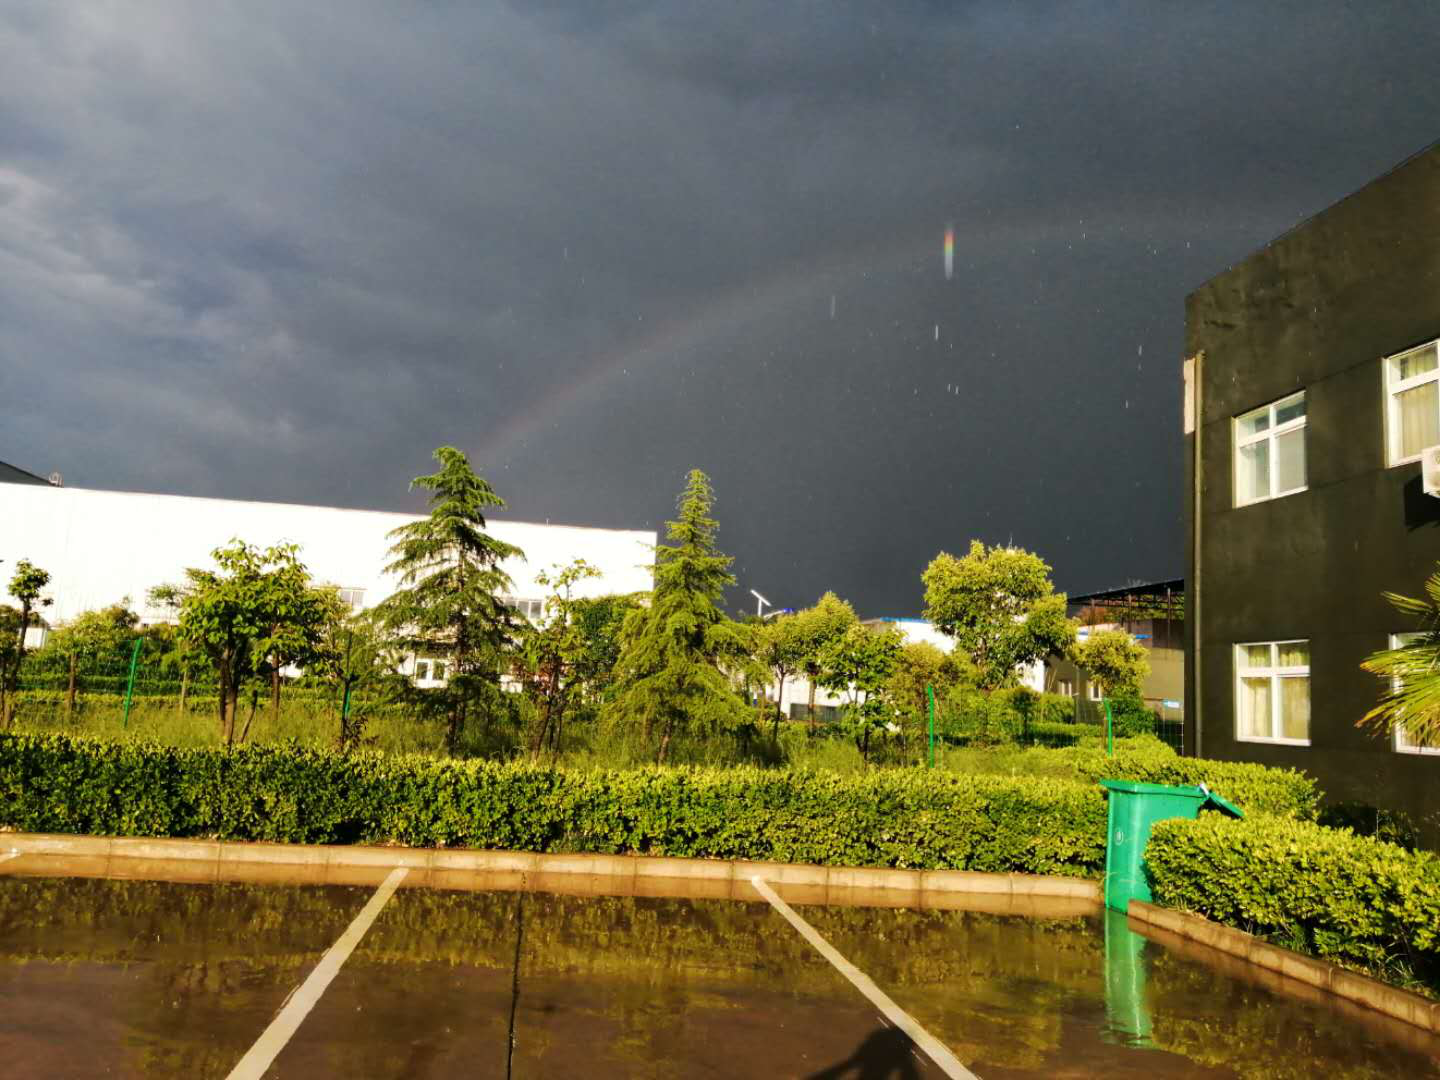 Rainbow after the Rain